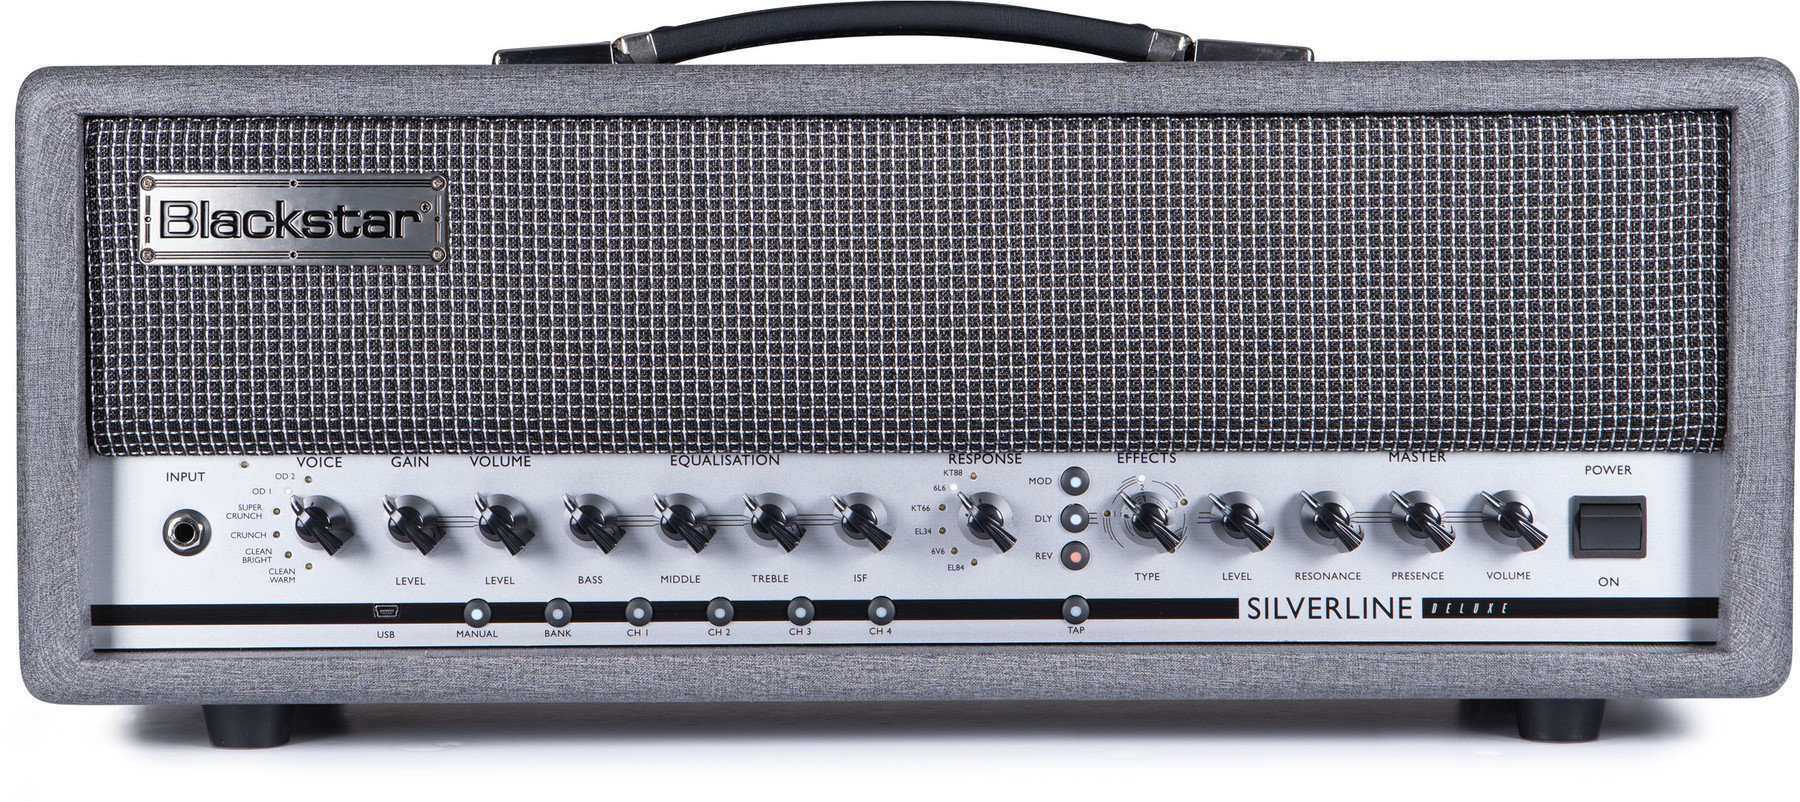 Modeling Guitar Amplifier Blackstar Silverline Deluxe Head